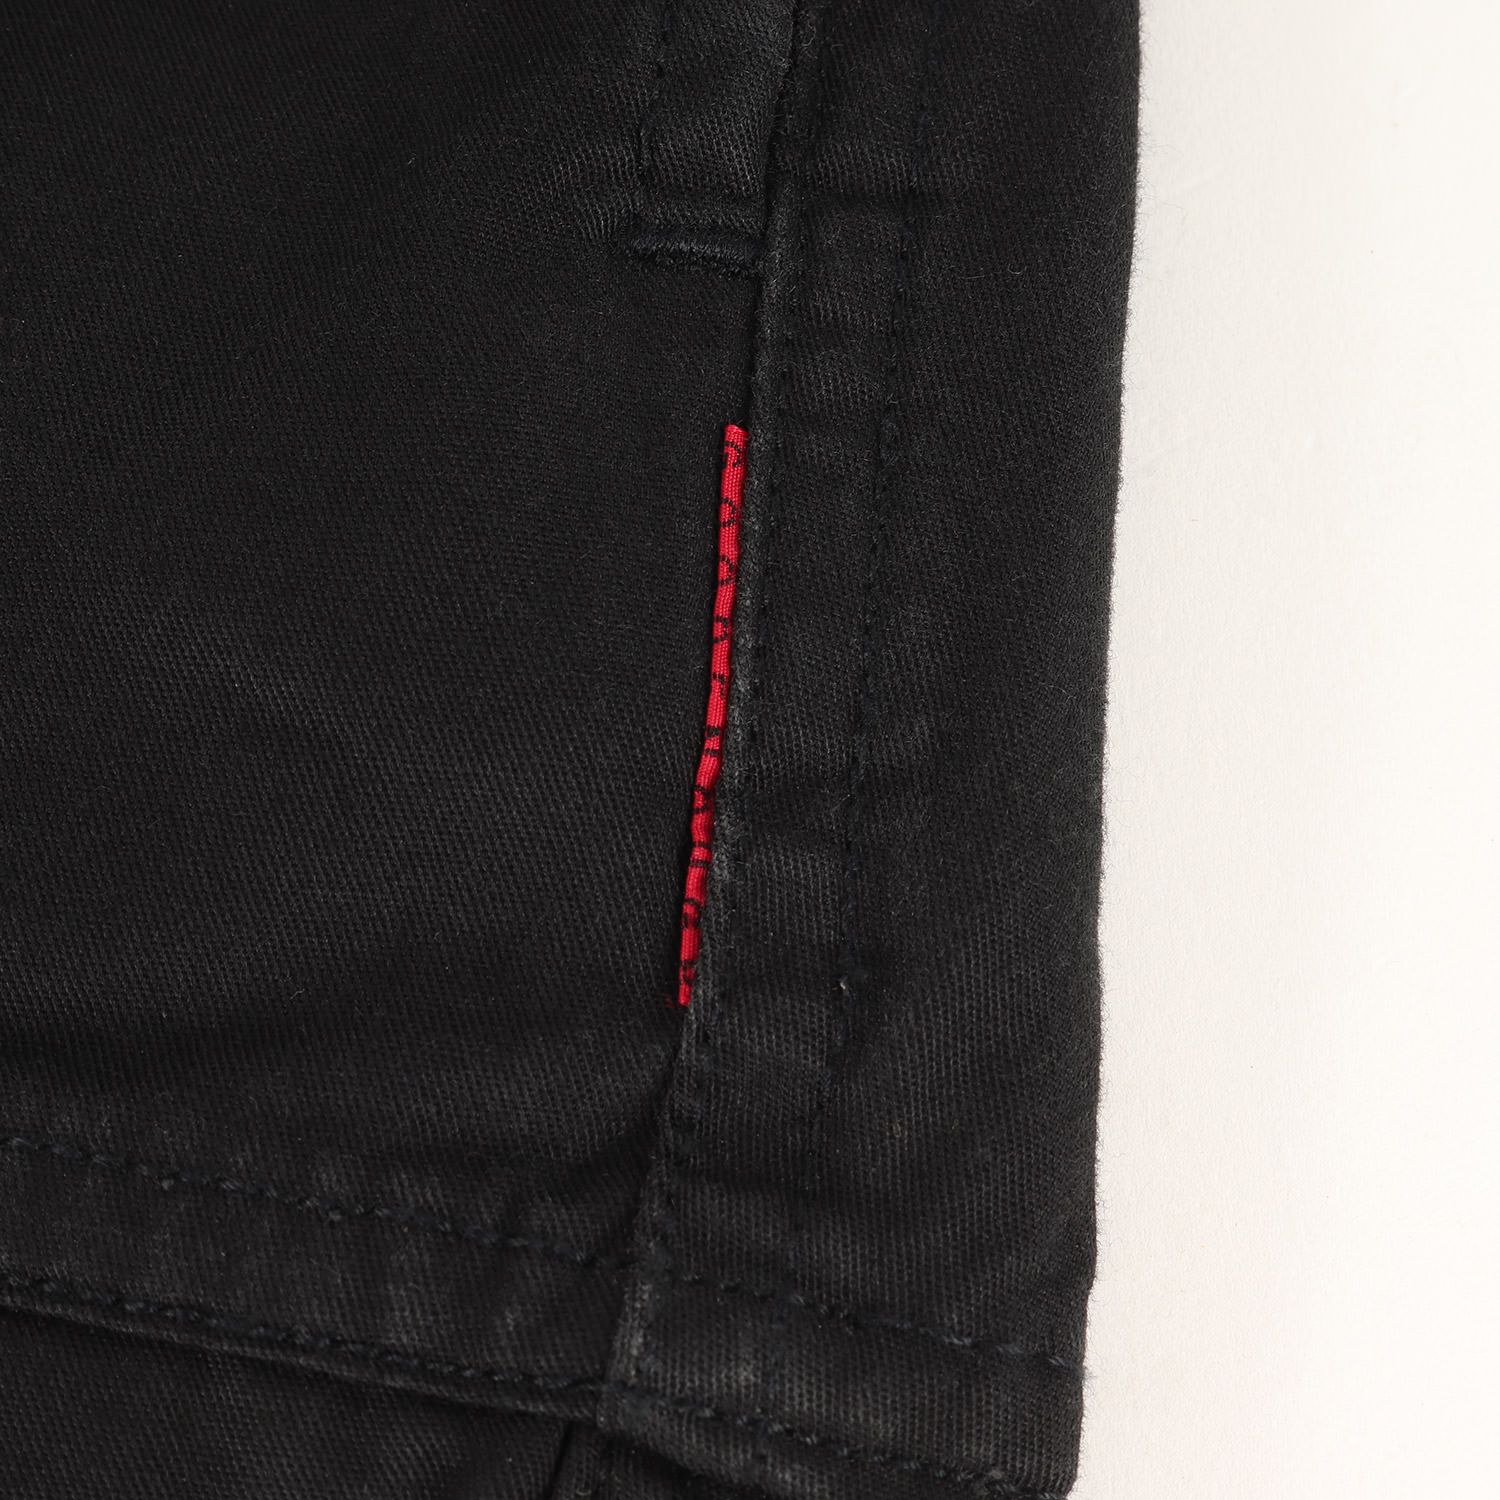 GOOD ENOUGH グッドイナフ パンツ サイズ:L 裾ドローコード付き コットンツイル パンツ 00s ブラック 黒 ボトムス ズボン ストリート ブランド アーカイブ 【メンズ】